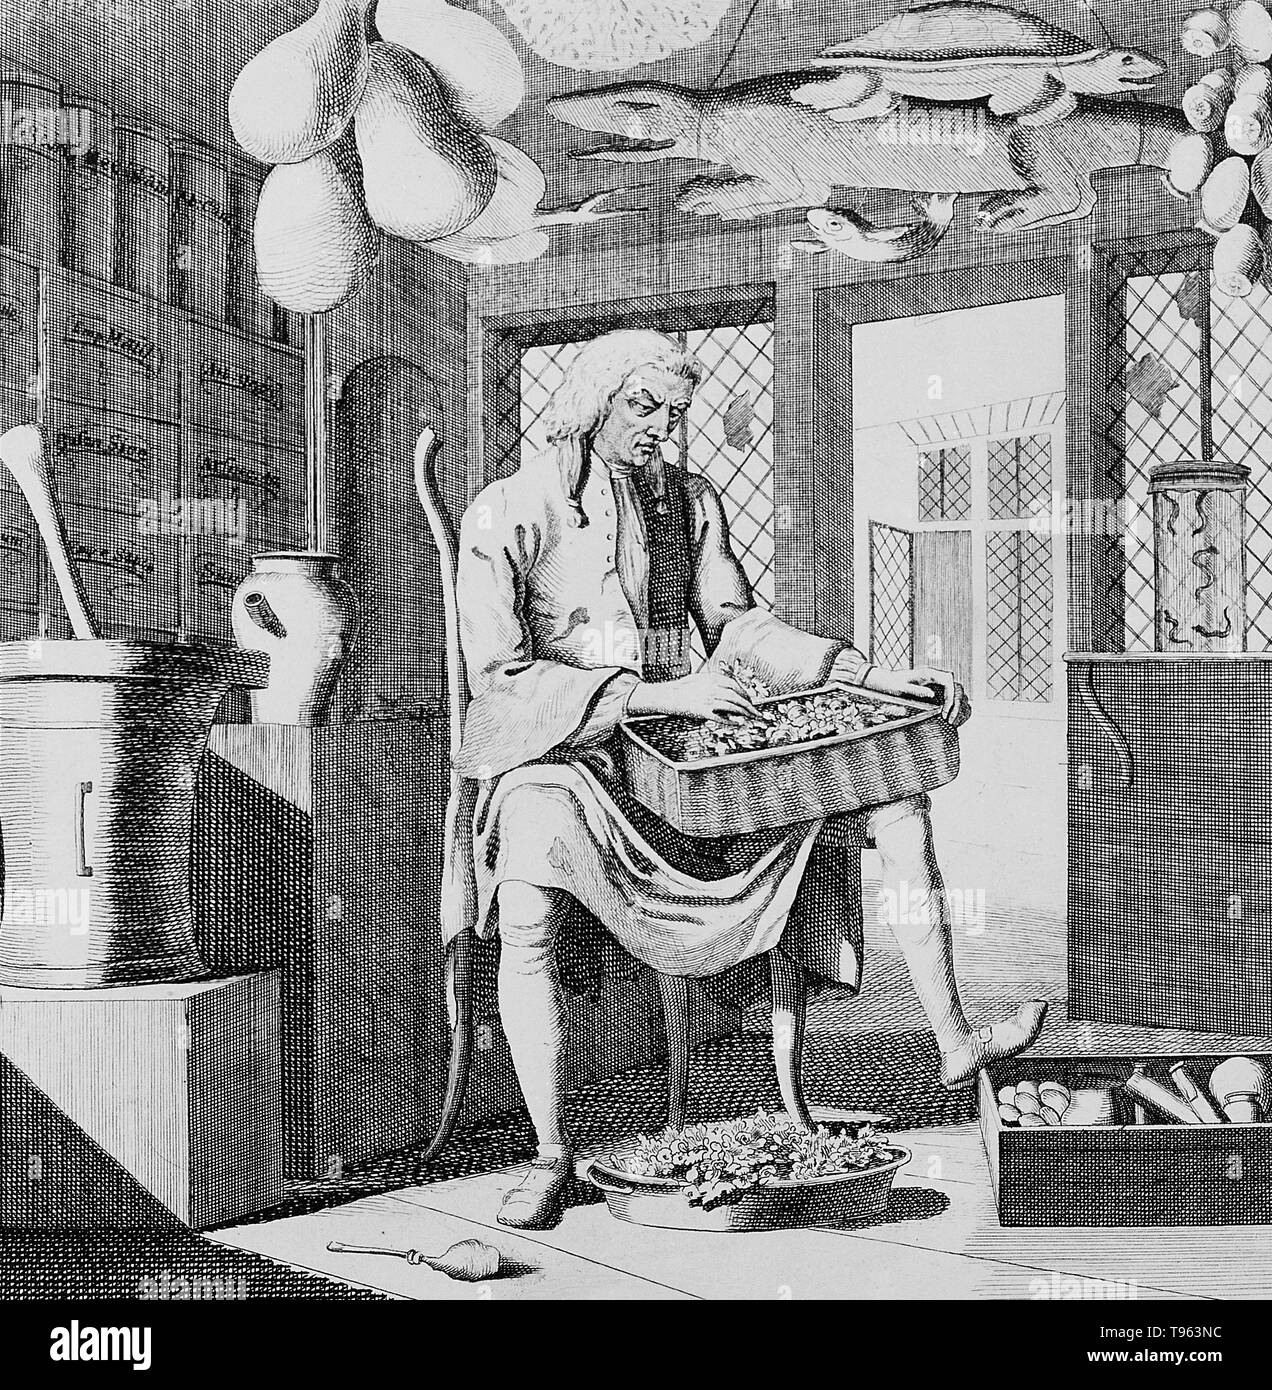 Eine Apotheke in seinem Geschäft sitzen, Sortieren durch Materia Medica, durch Utensilien von seinem Beruf umgeben. Hinweis Alligator an der Decke. Alligatoren wurden häufig von den Decken der Apotheke Geschäften aufgehängt, ein Symbol für den Beruf. Kupferstich von Dr. Rock, c 1750. Stockfoto